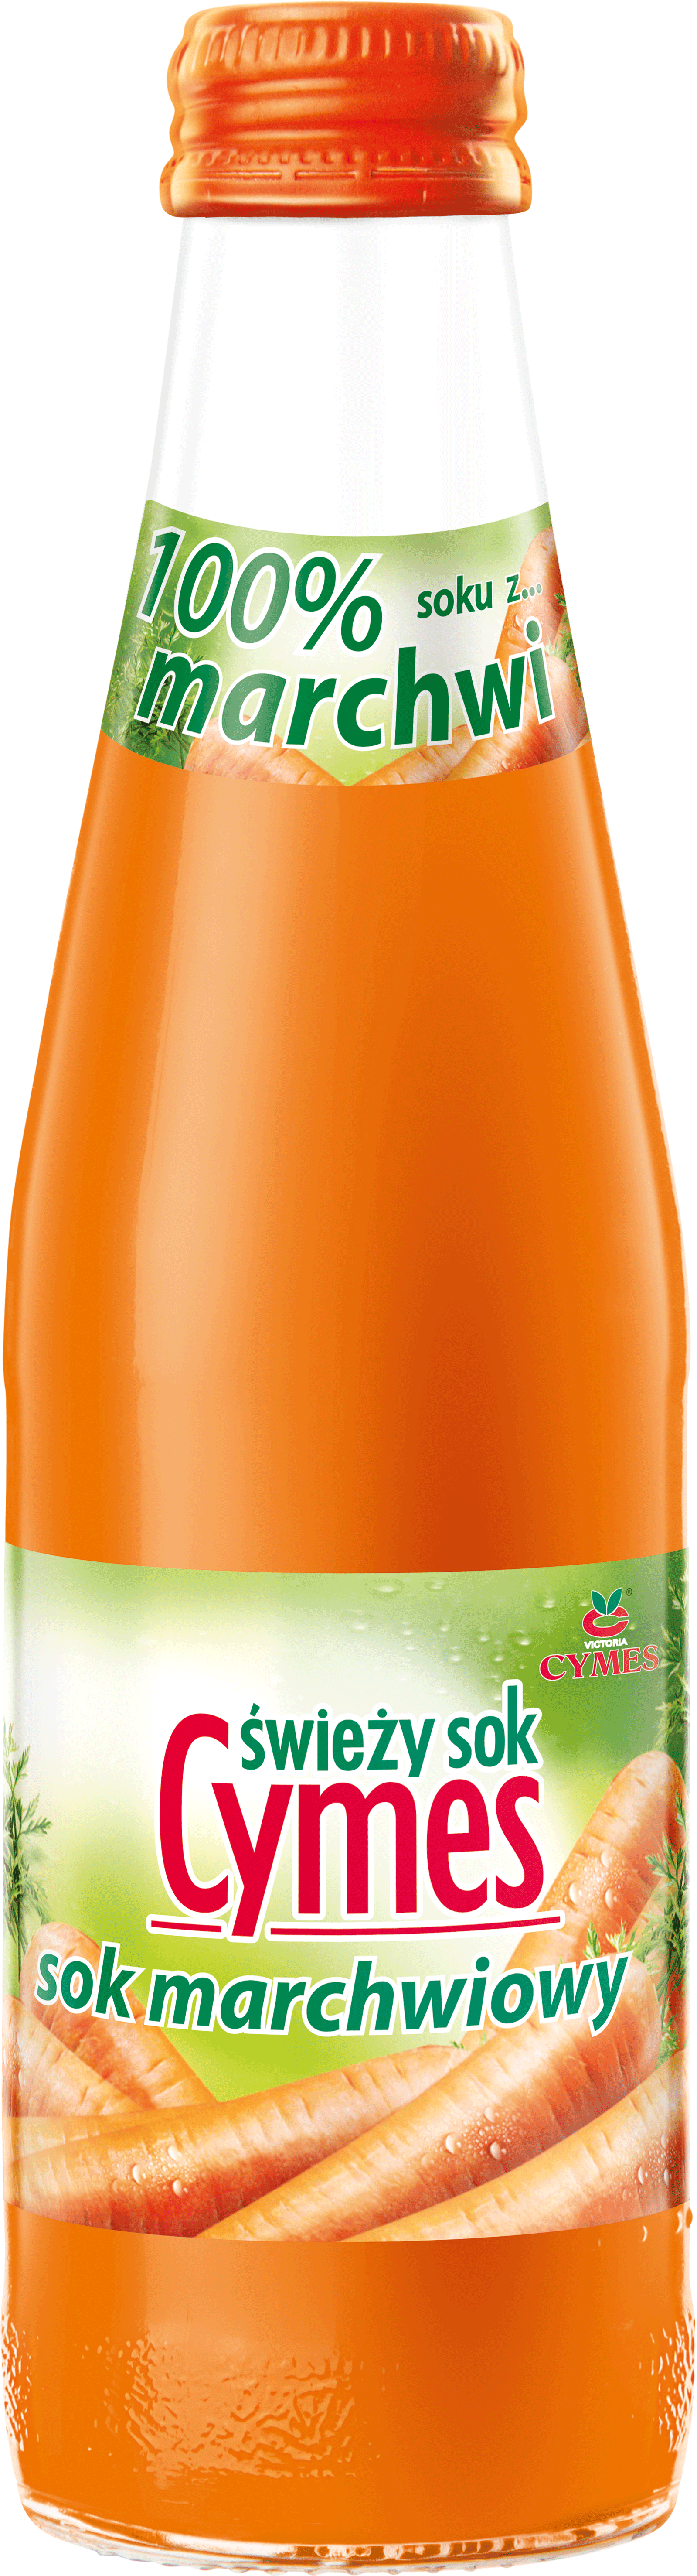 Victoria Cymes - sok marchwiowy